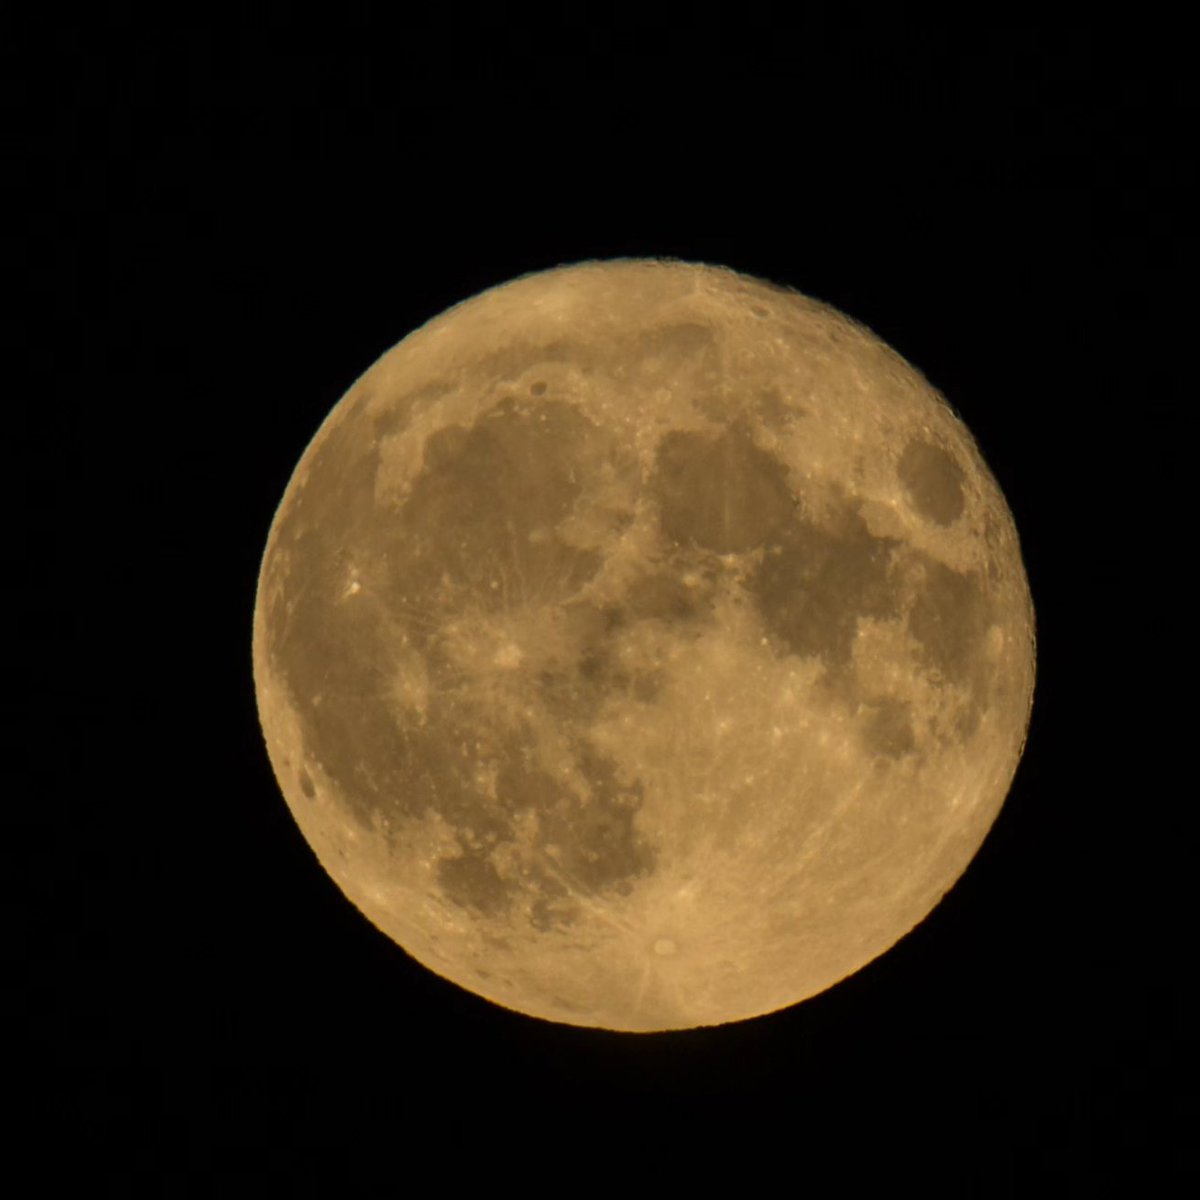 Happy Full Moon in Aquarius 🌕 #Fullmoon #moon #nightsky #moonrise #kootenaylife